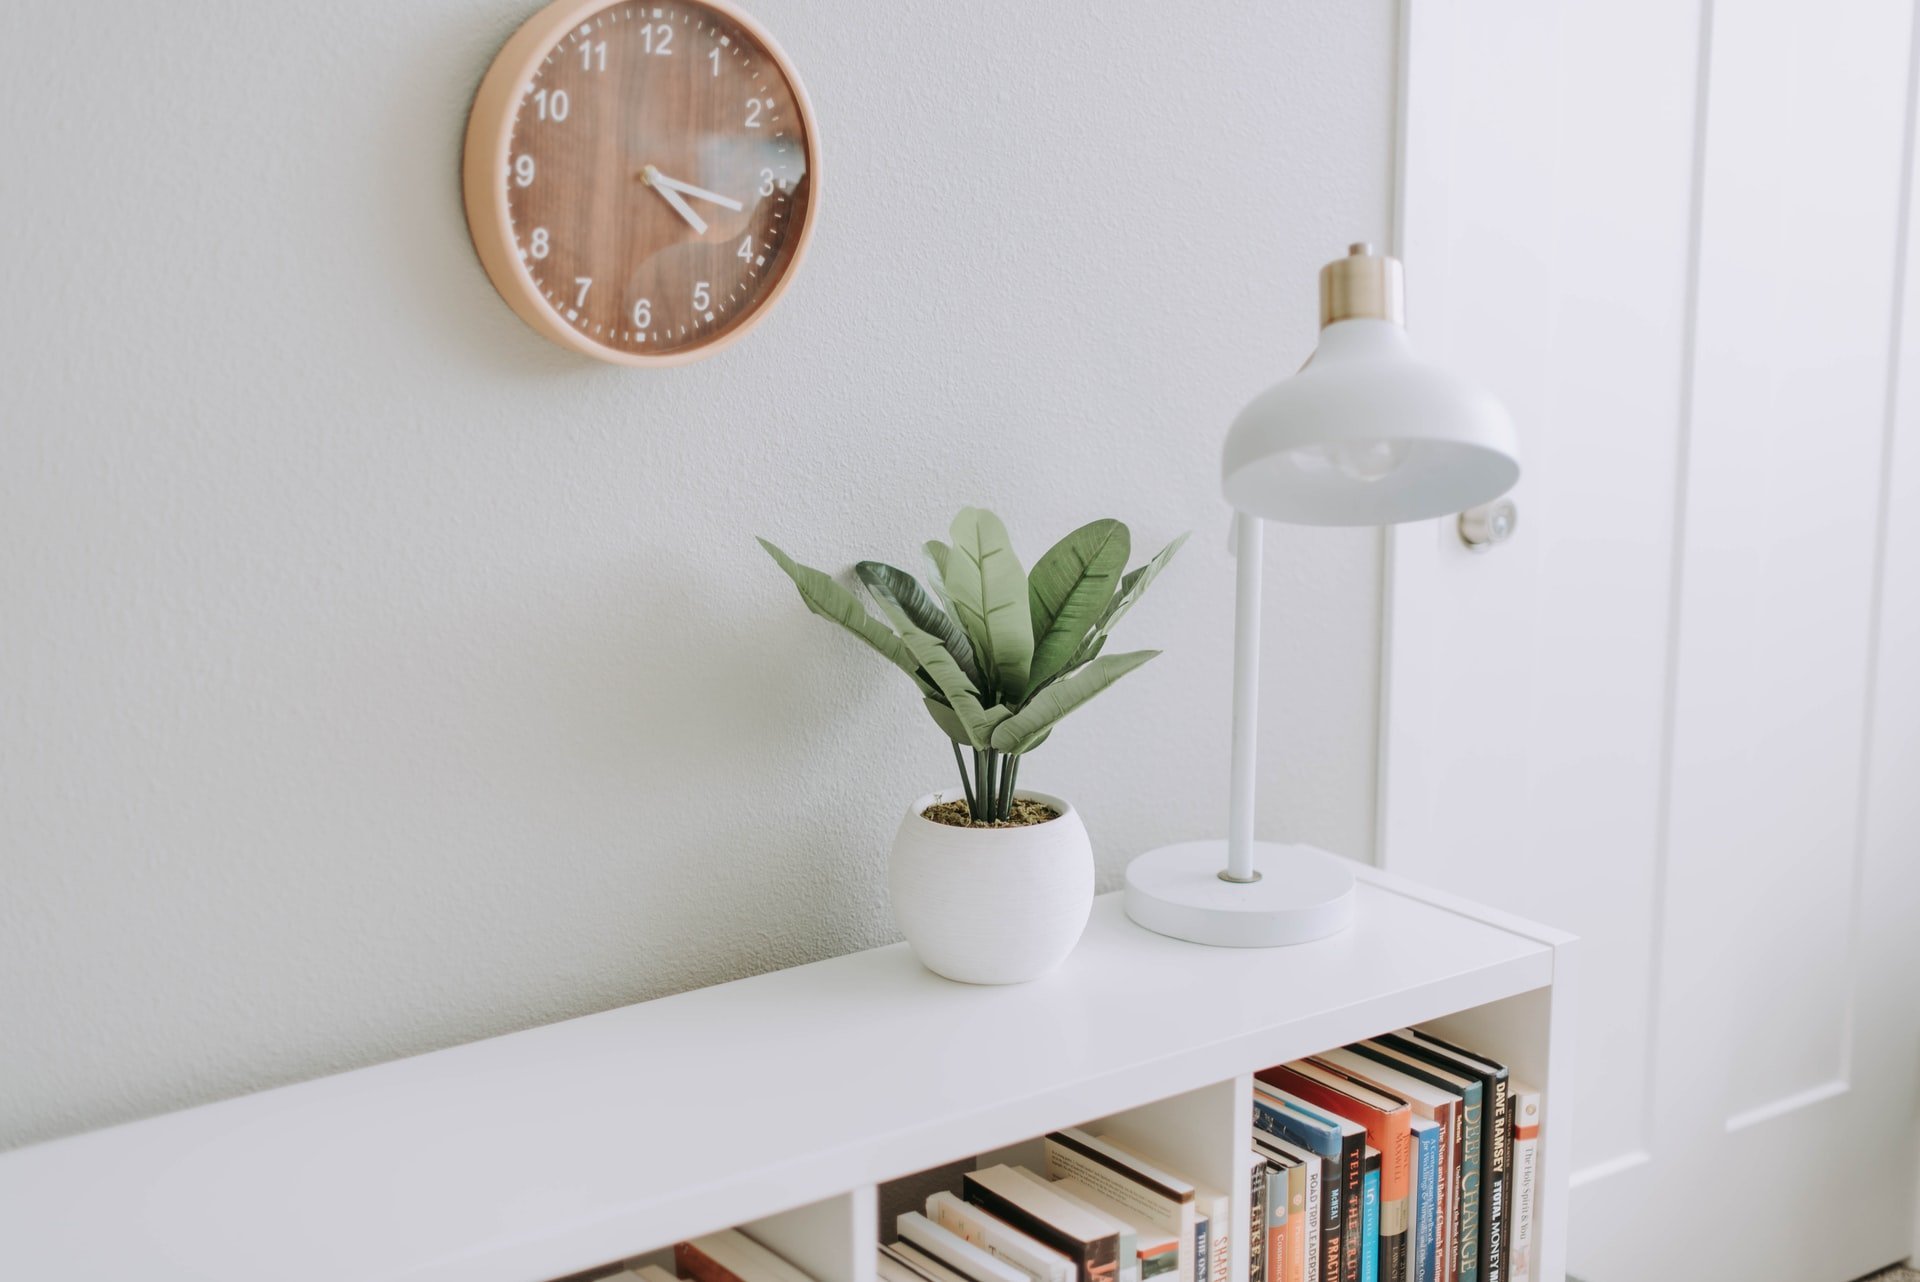 Armário branco com livros, vaso com planta e luminária em cima e um relógio marrom na parede.